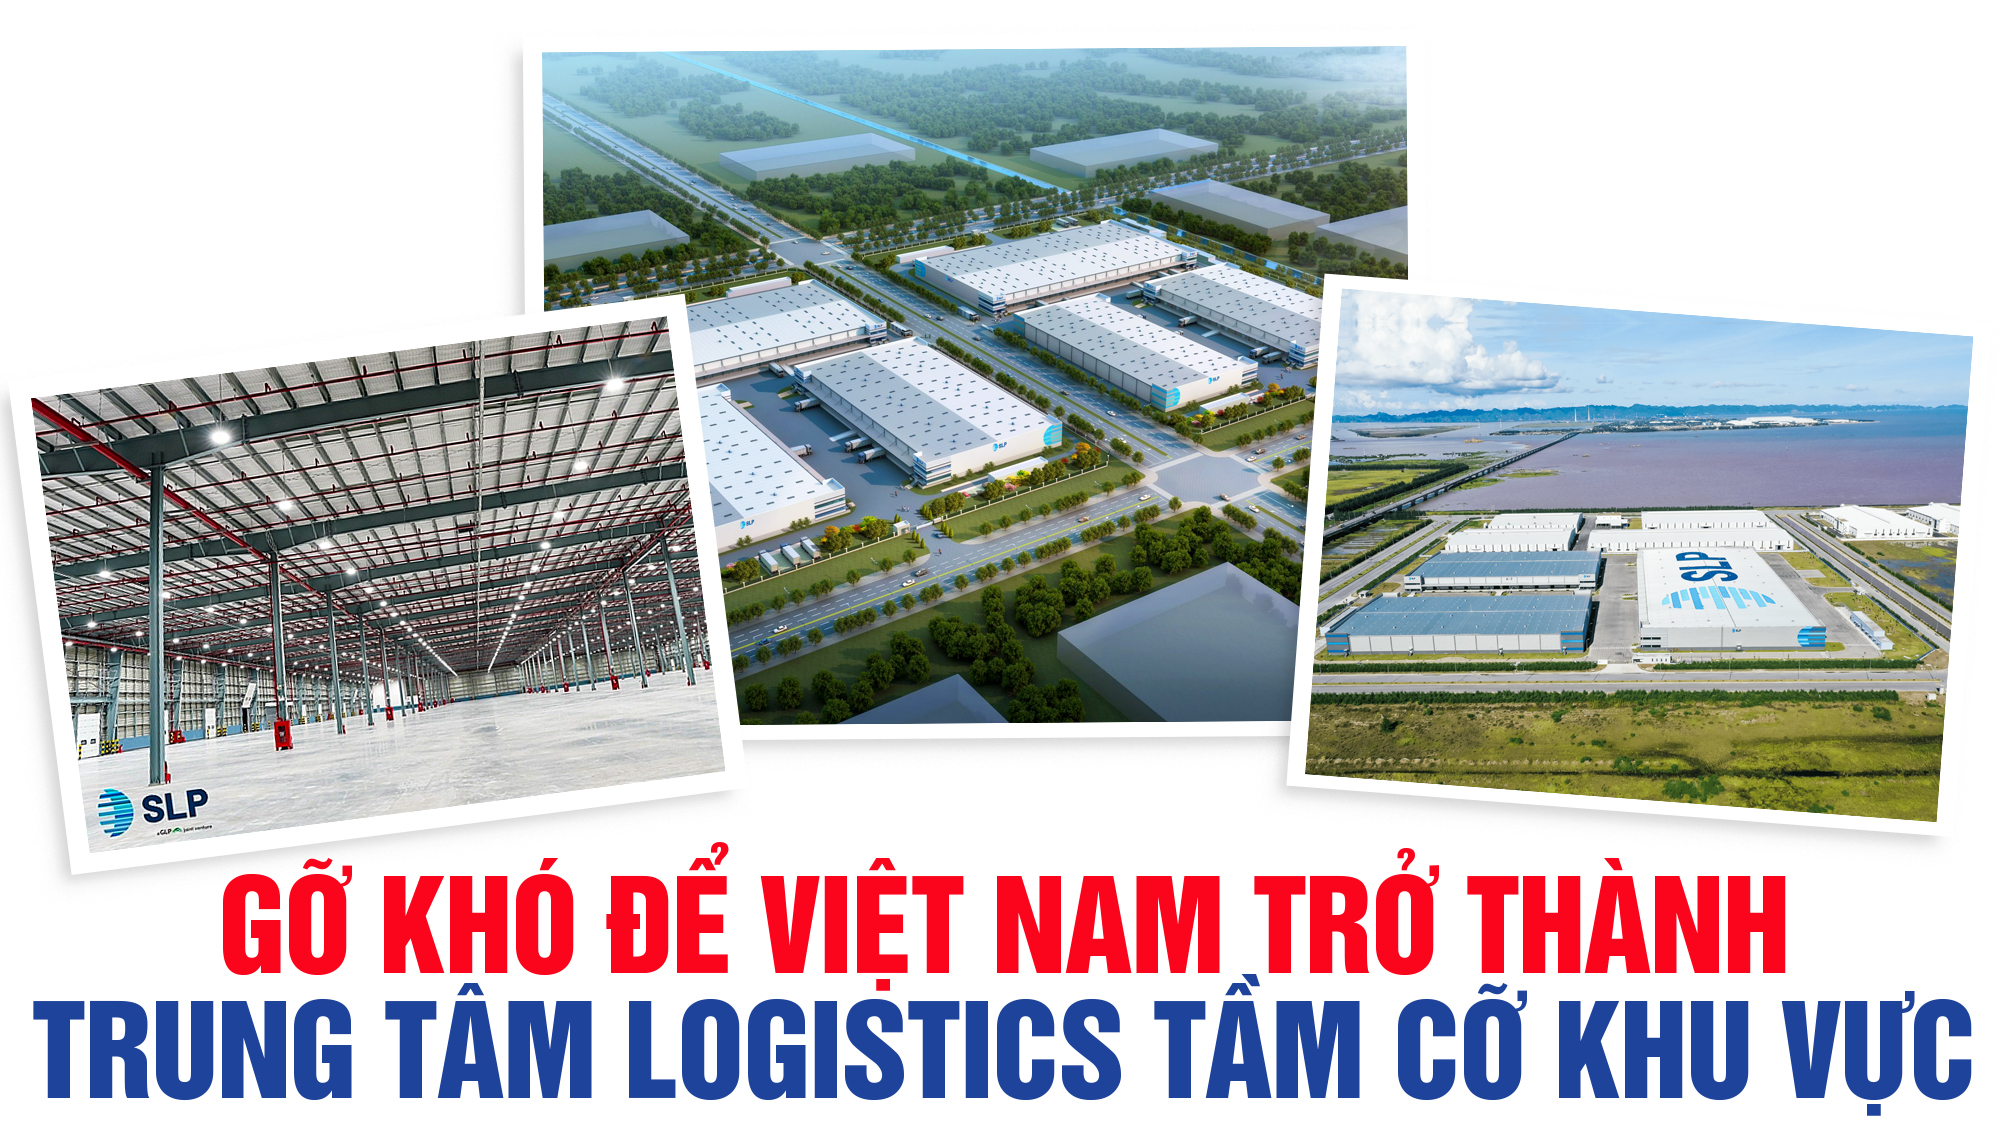 Gỡ khó để Việt Nam trở thành trung tâm logistics tầm cỡ khu vực